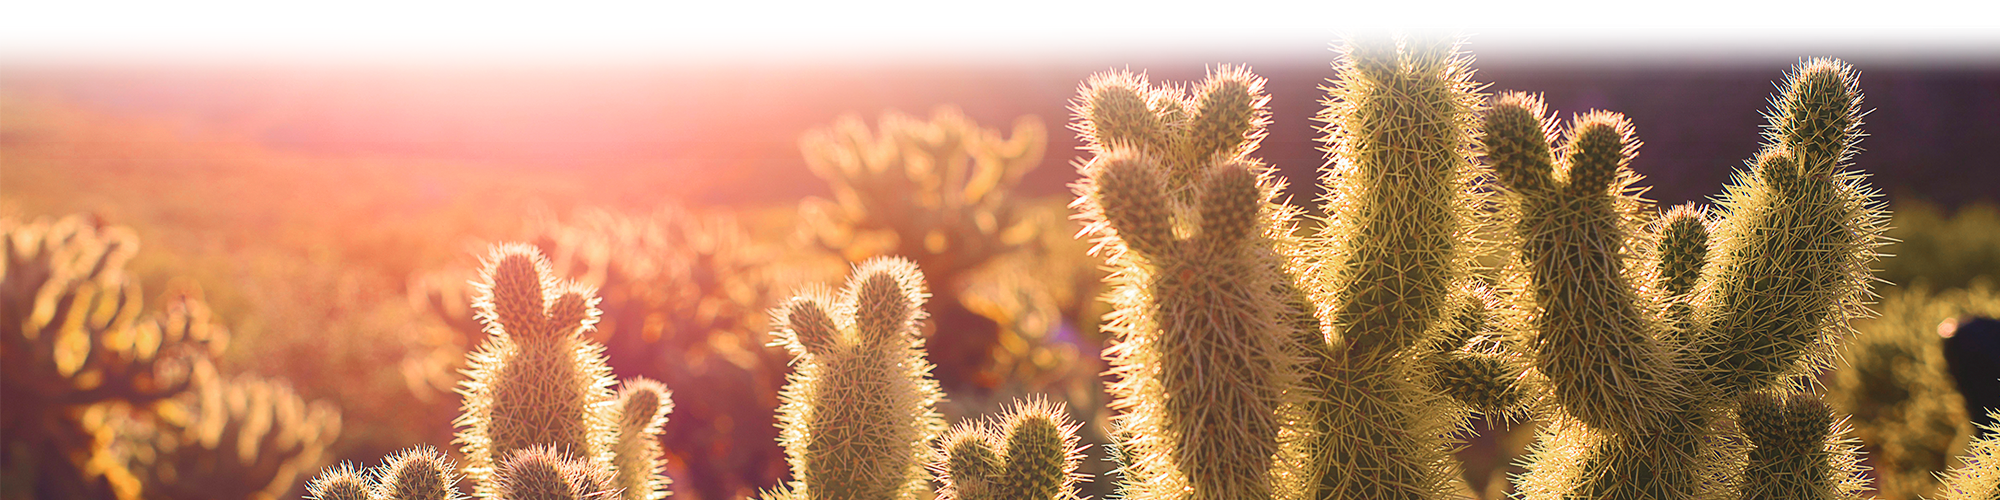 background image of cacti